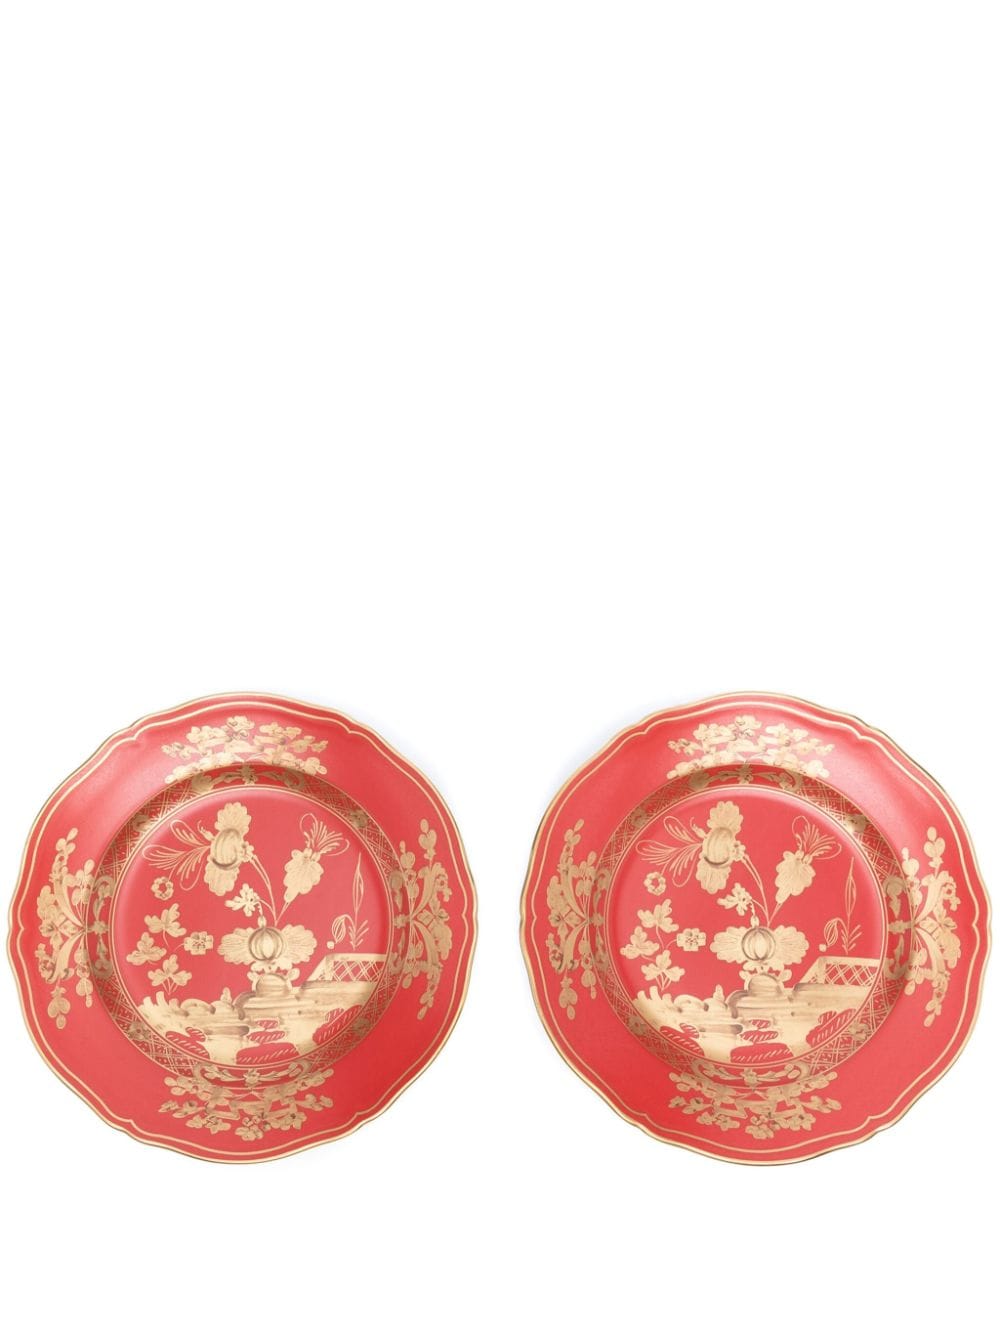 GINORI 1735 Rubrum porcelain plate (set of two) - Red von GINORI 1735